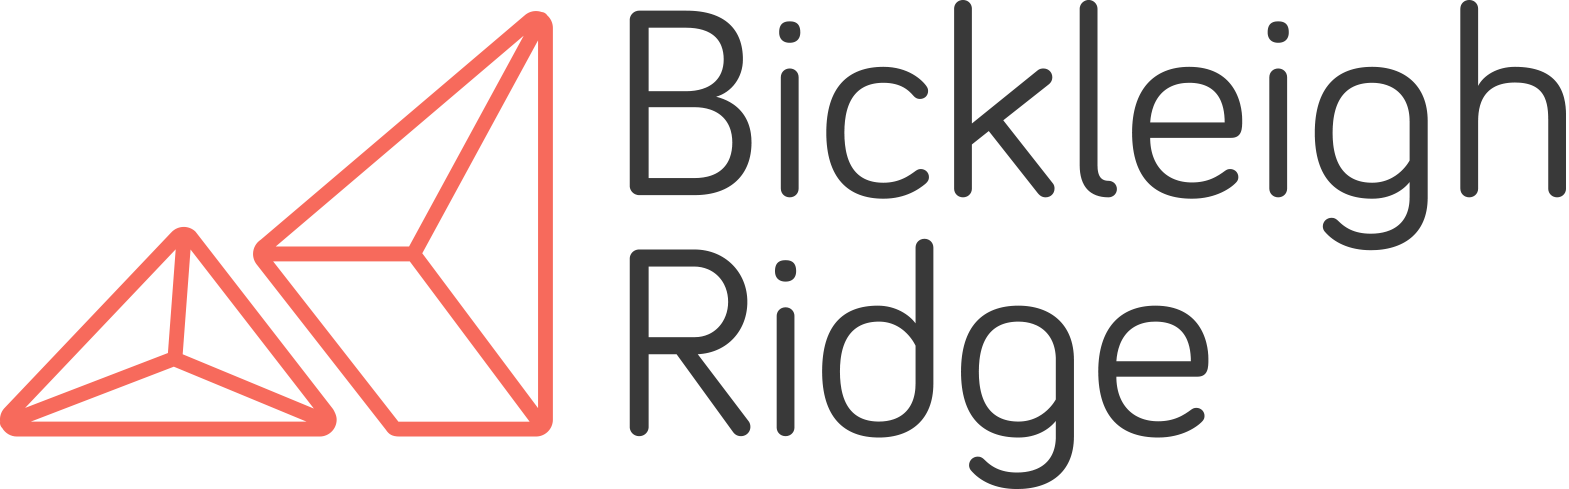 Bickleigh Ridge Ltd